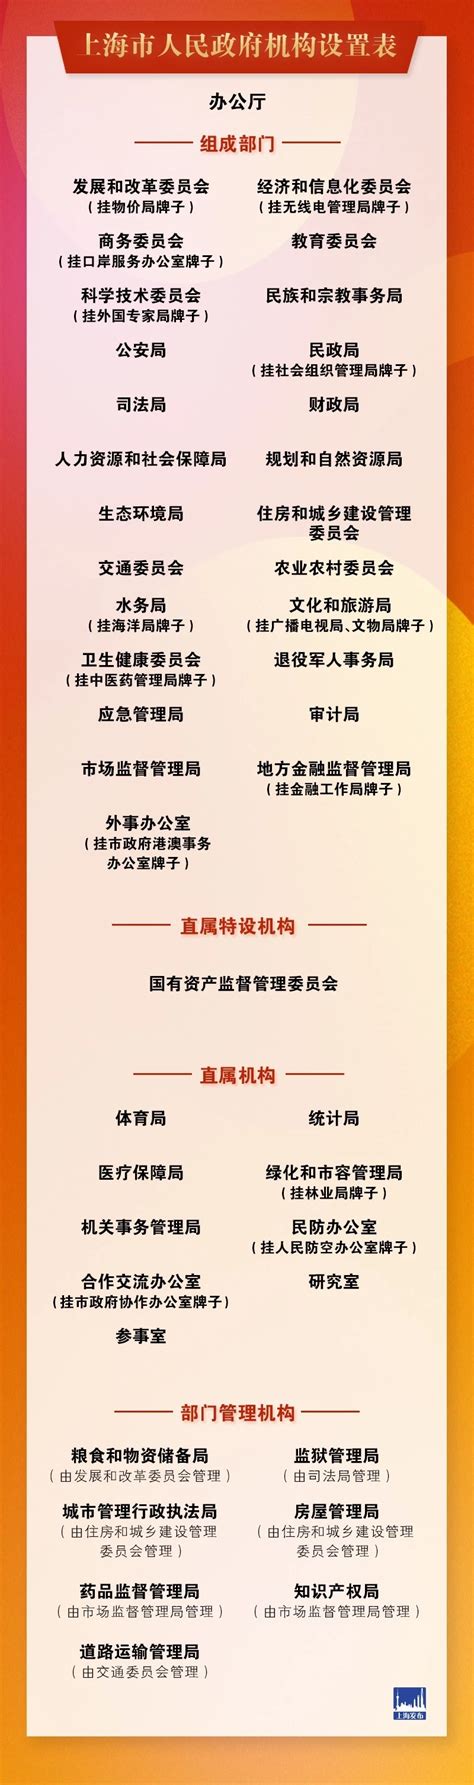 一图看懂上海市政府机构设置表！